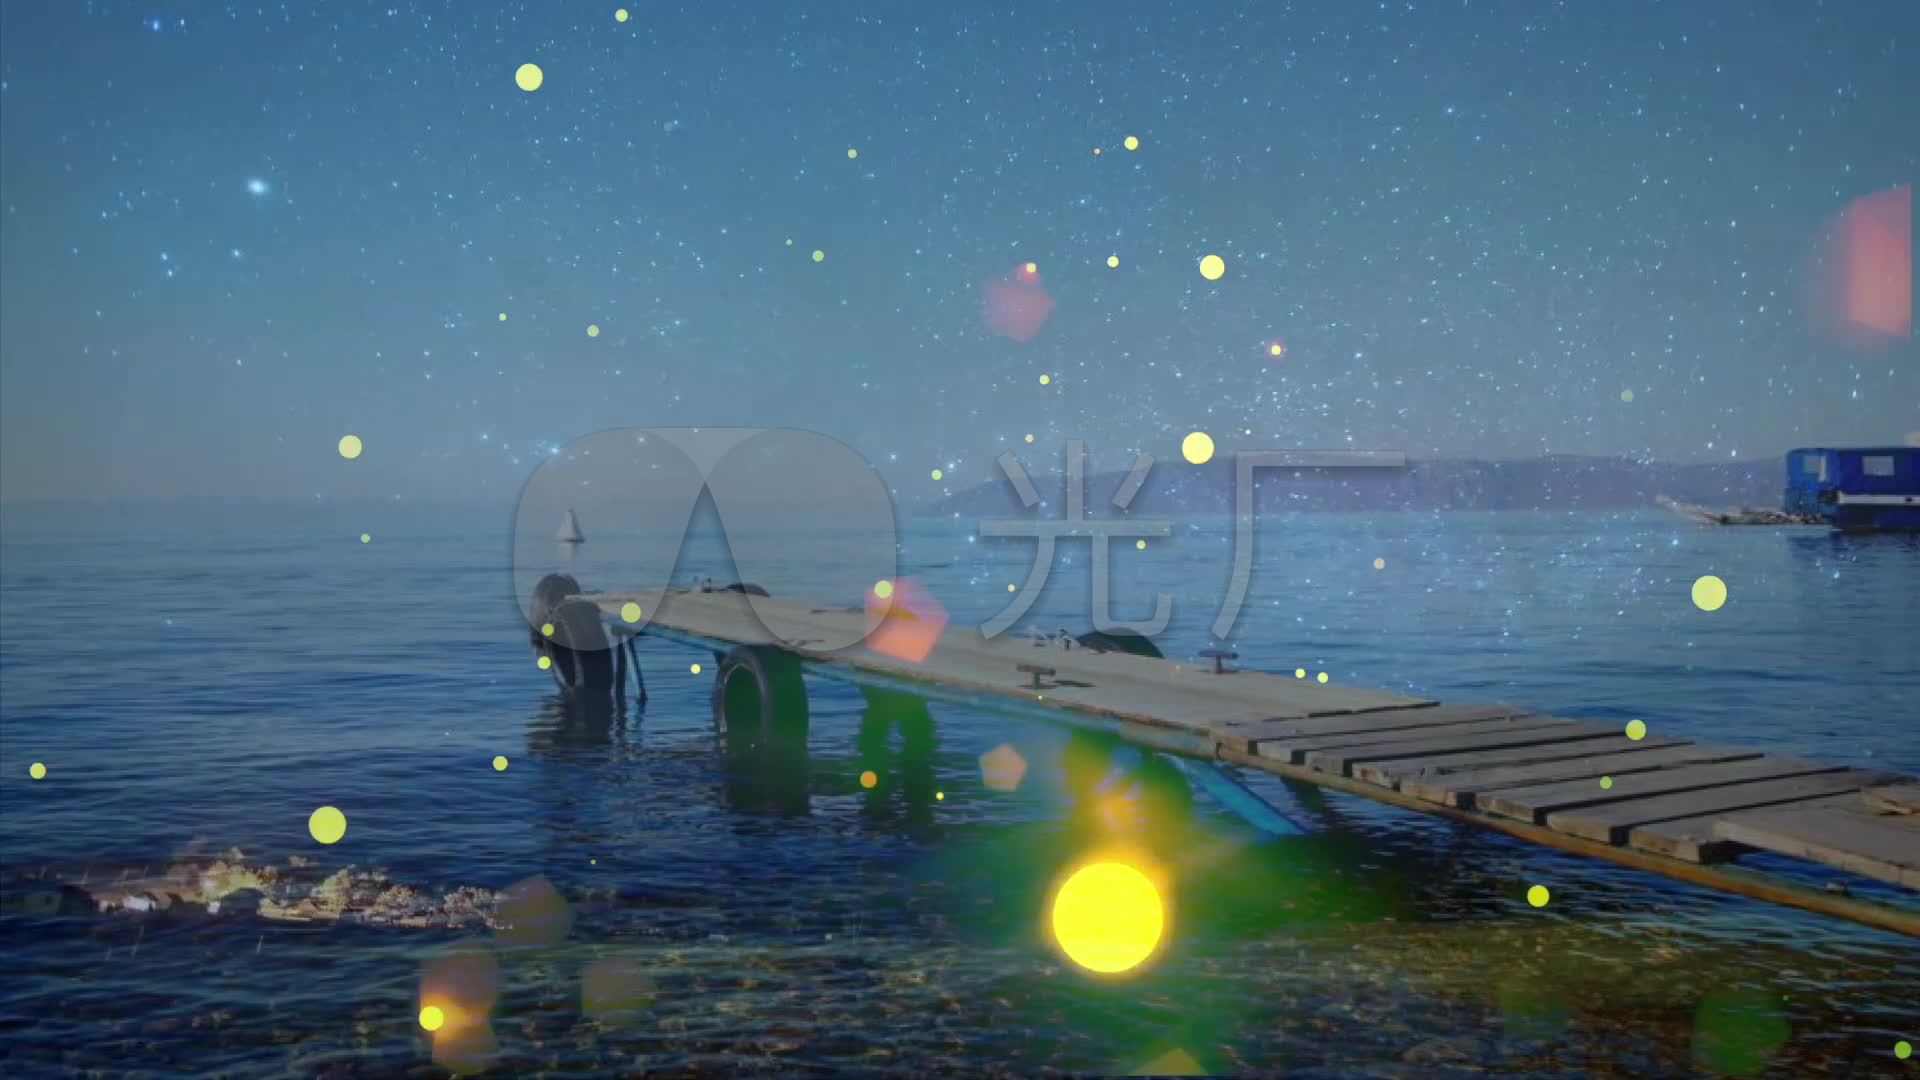 贝加尔湖畔－李健 - 歌单 - 网易云音乐